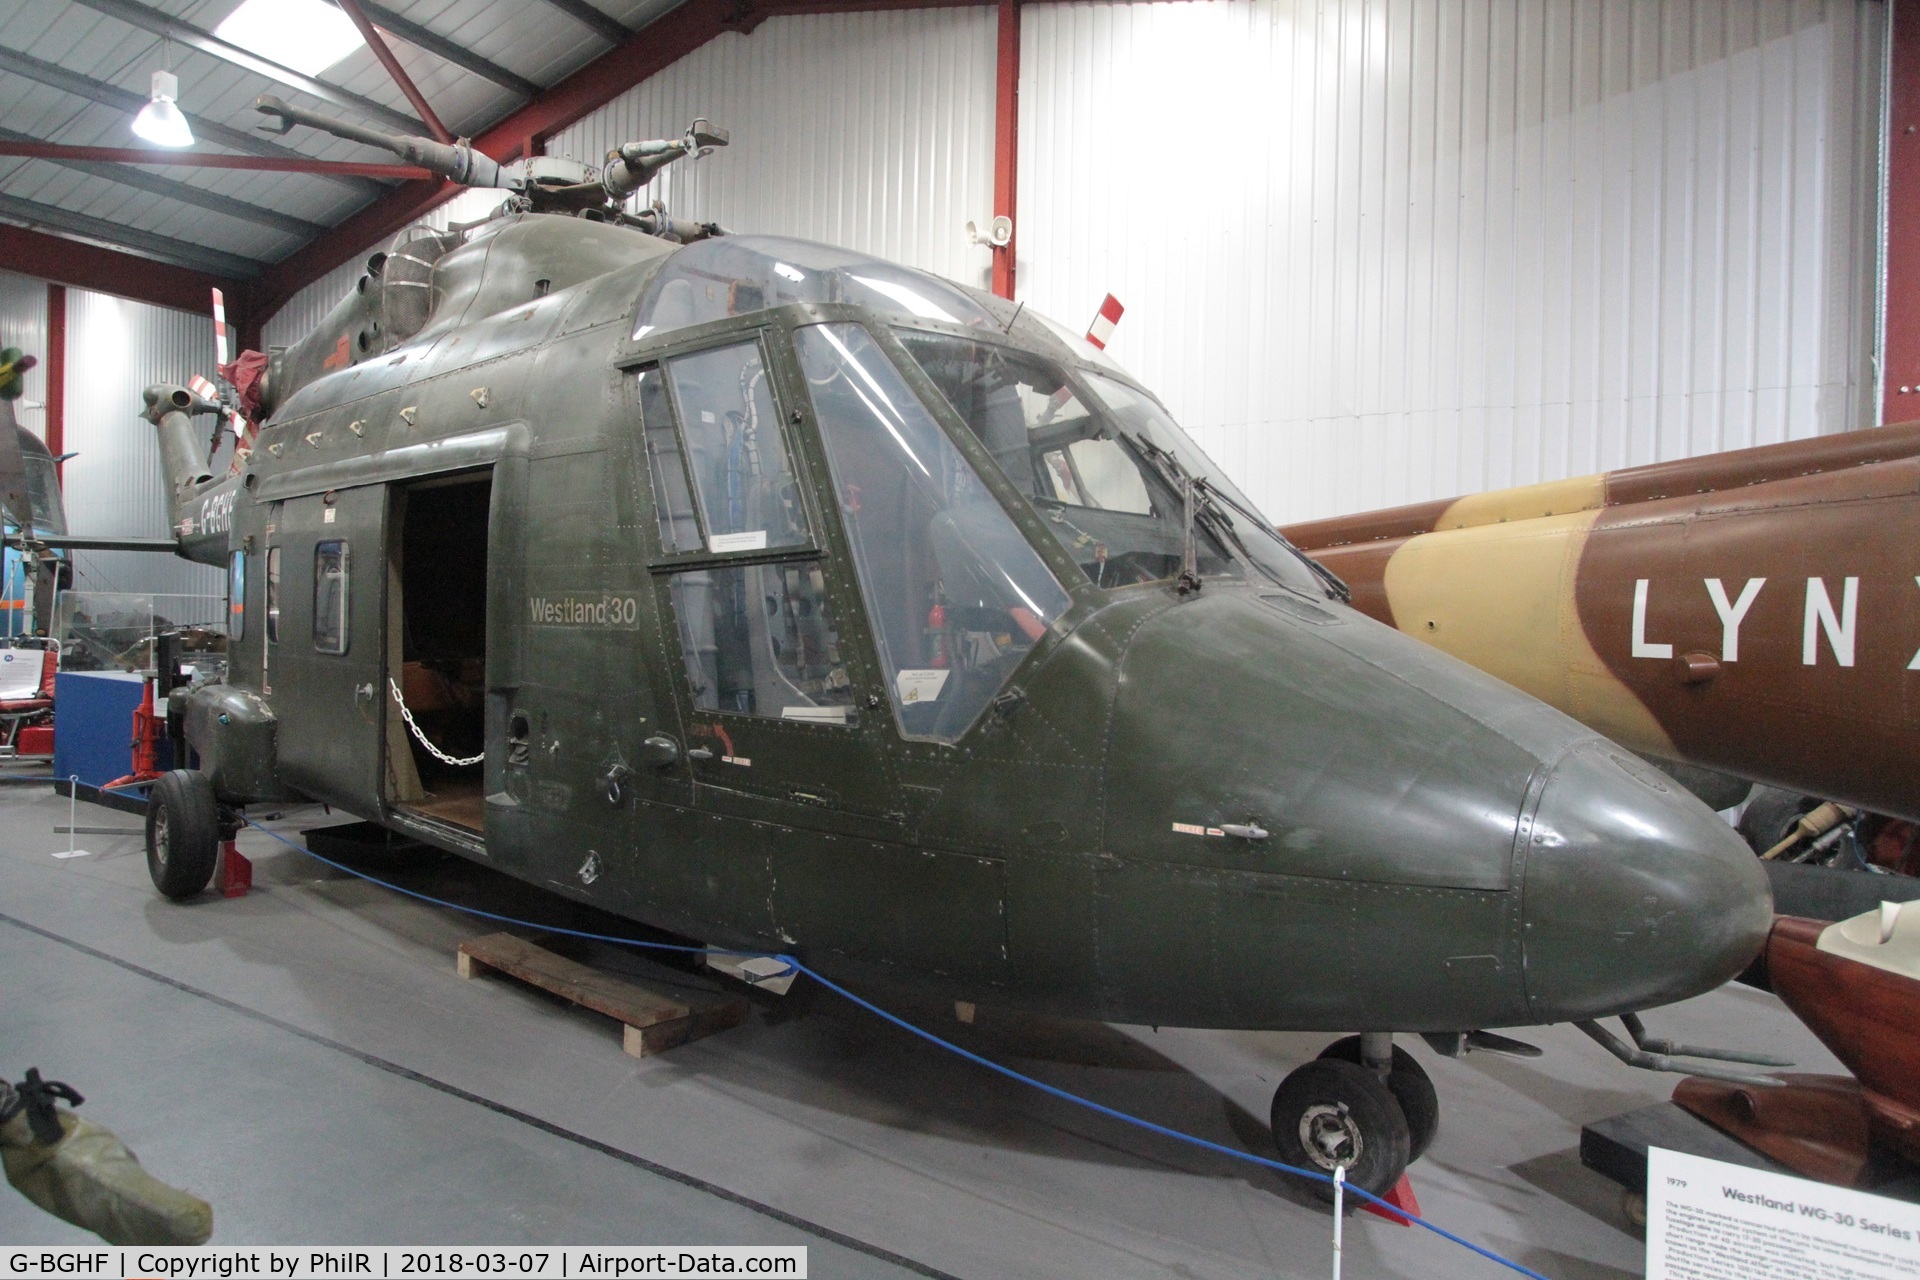 G-BGHF, 1977 Westland WG-30-100-60 C/N WA-001 P, G-BGHF 1977 Westland WG 30-100 Helicopter Museum